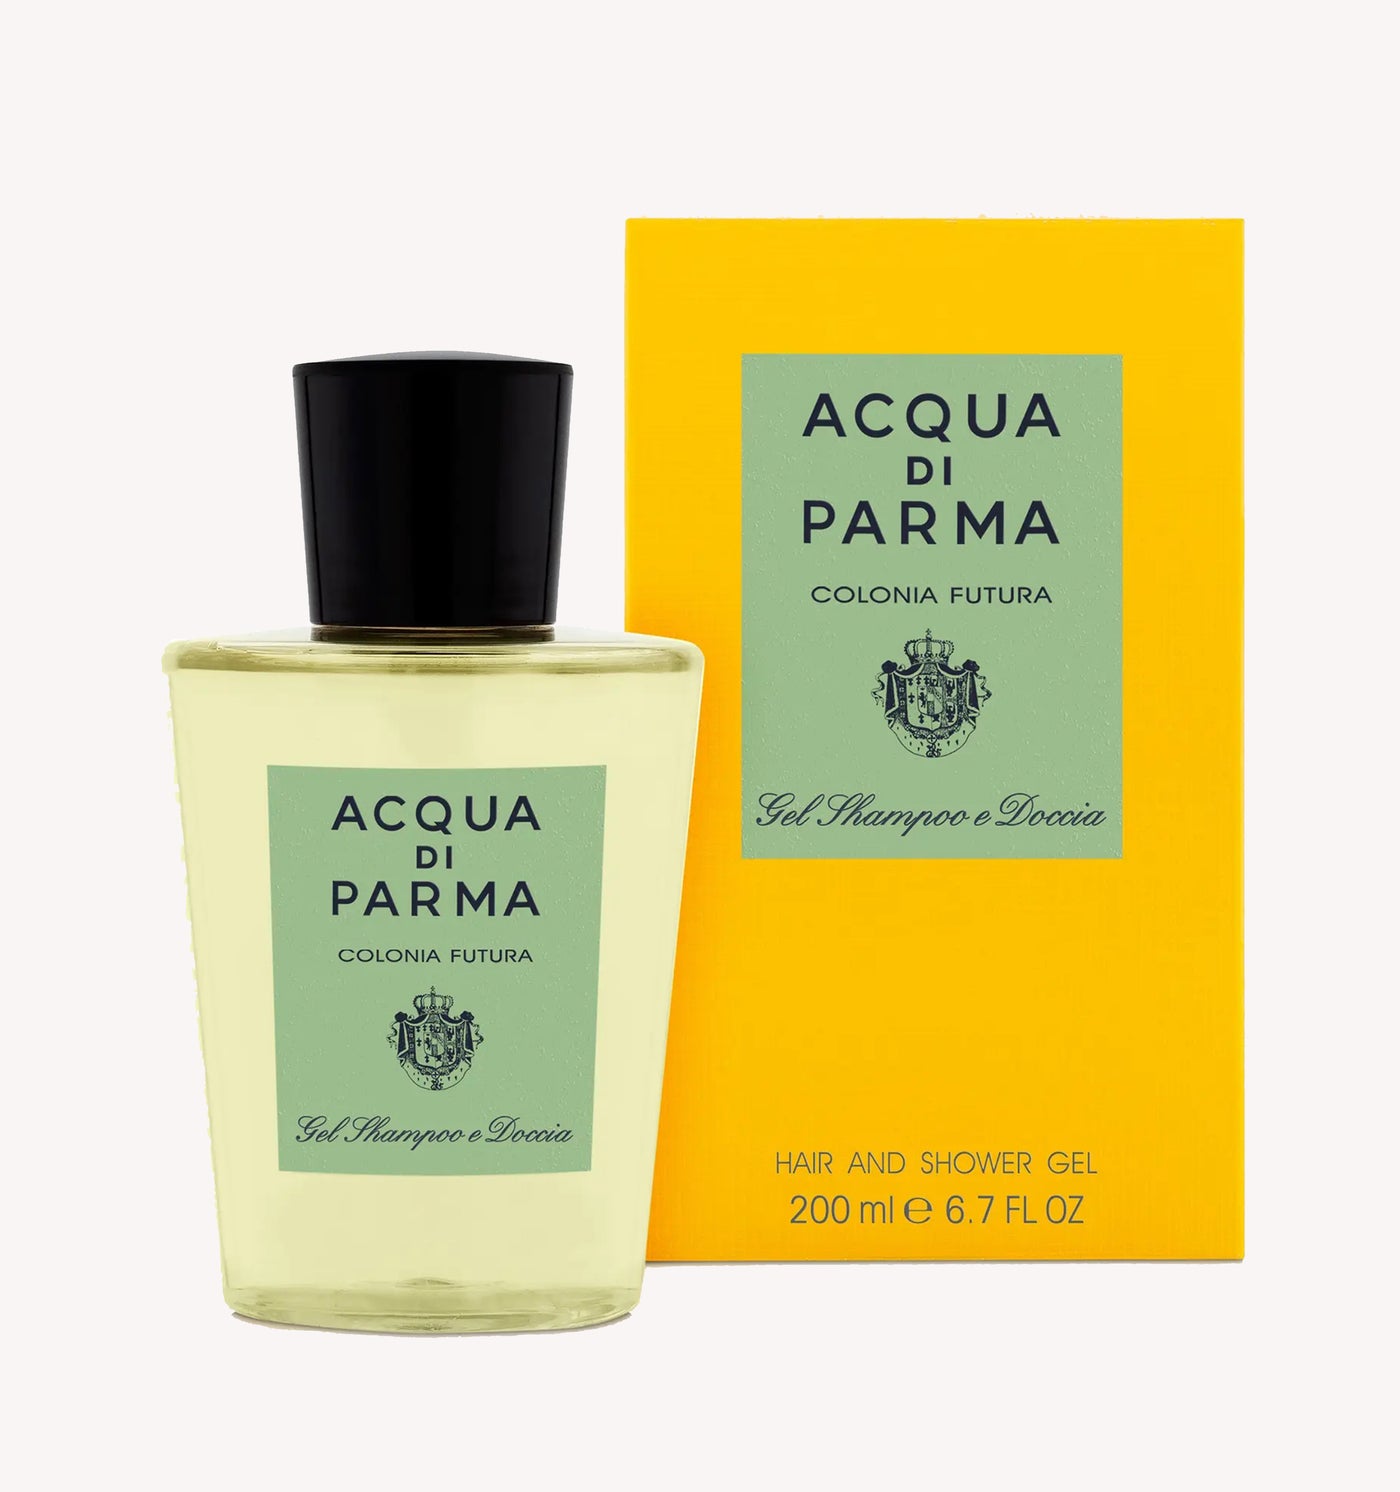 Acqua di Parma Hair and Shower Gel in Colonia Futura